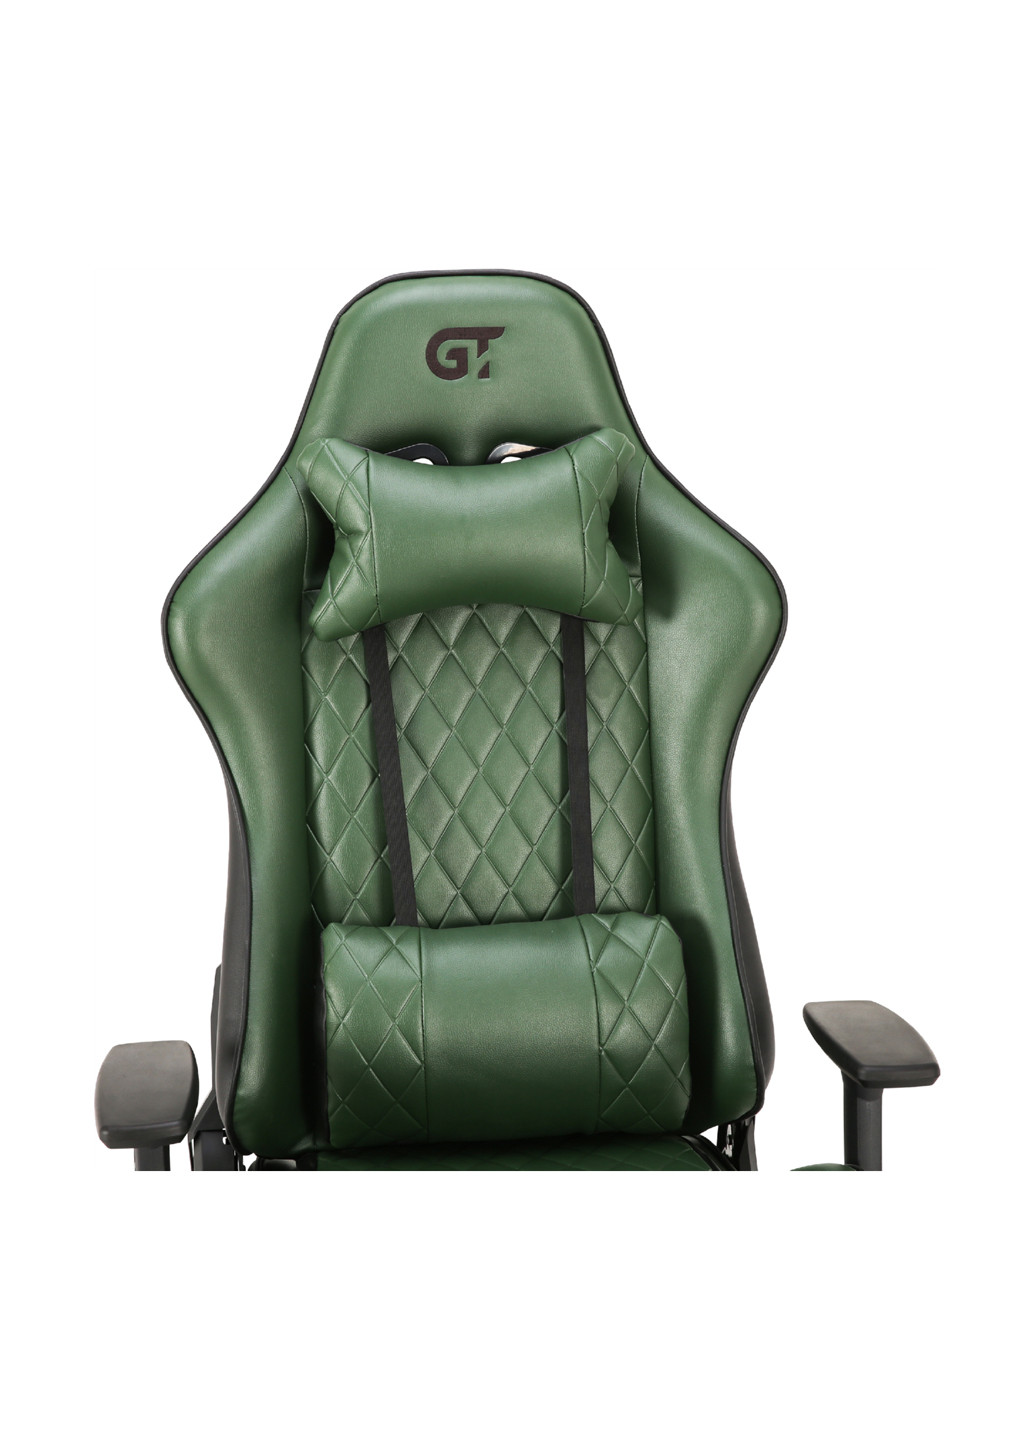 Геймерське крісло X-2540 Black / Dark Green GT Racer x-2540 black/dark green (184833910)